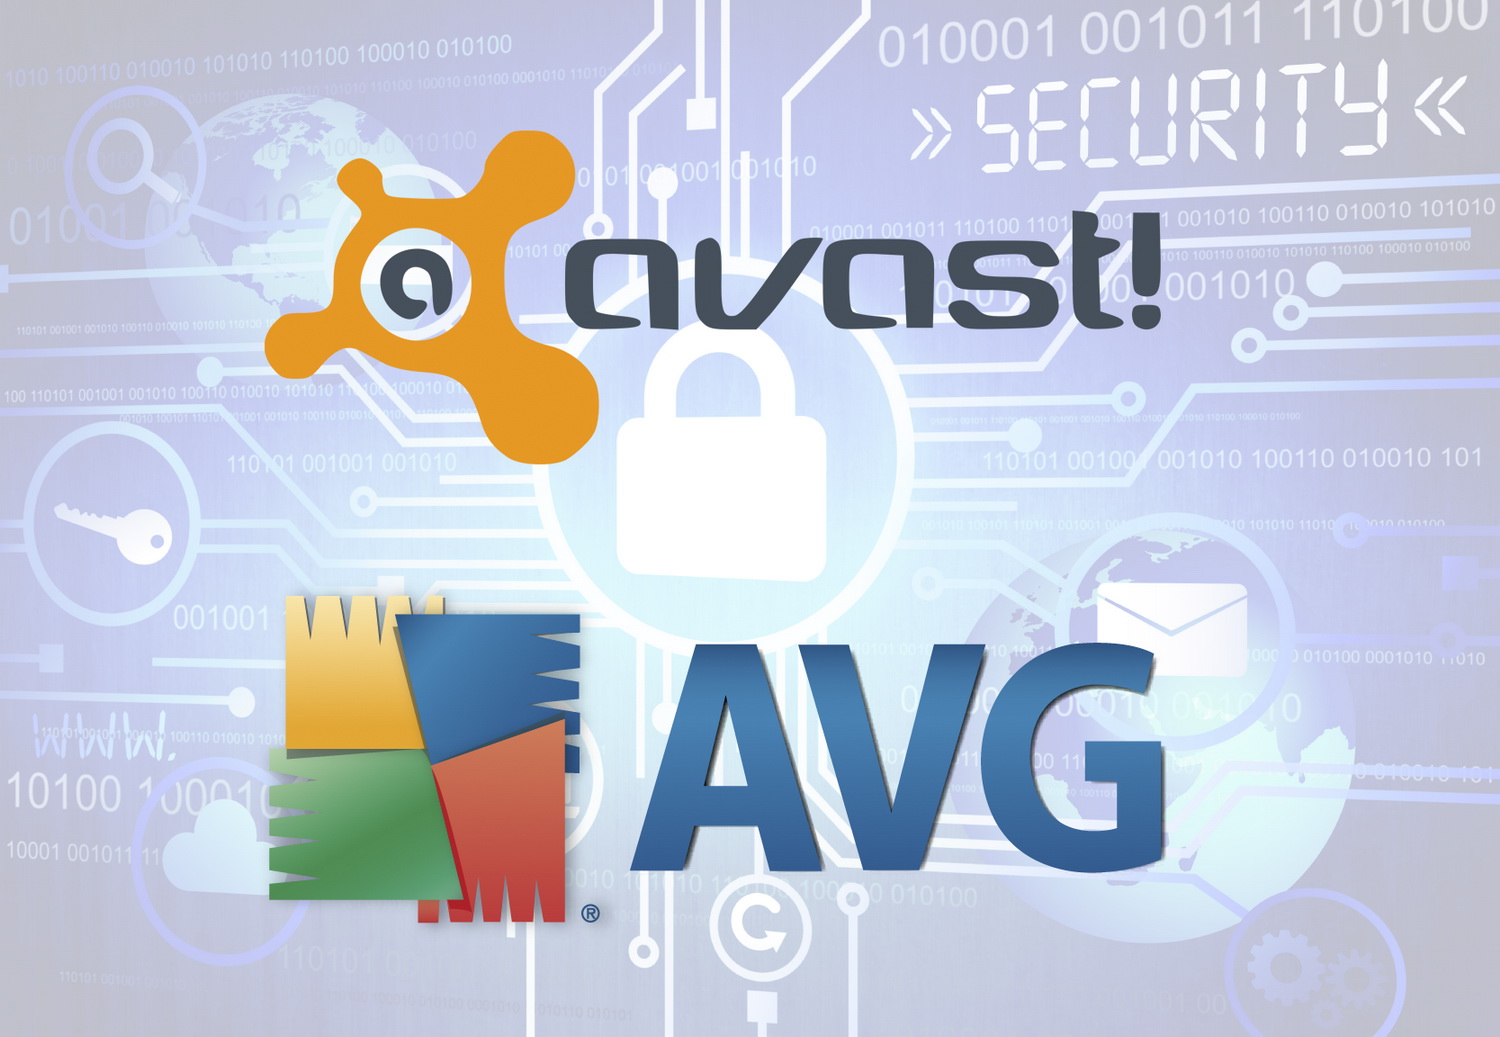 Бесплатные антивирусы Avast и AVG более 7 лет имели уязвимость опасную для пользователей / Программы, сервисы и сайты / iXBT Live